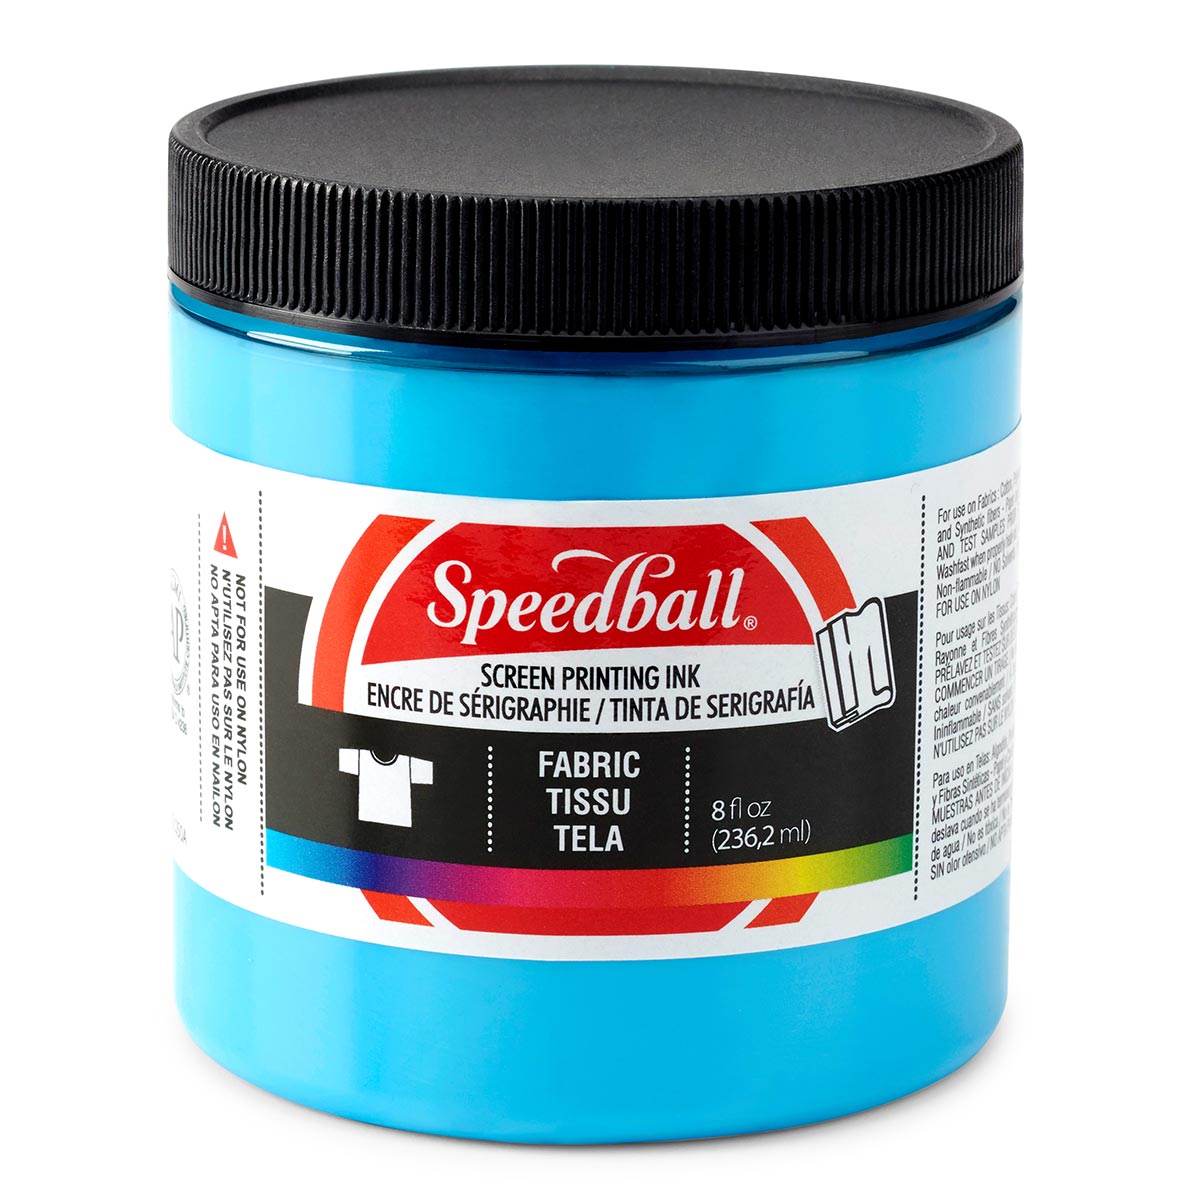 Speedball-Inchiostro per la stampa dello schermo in tessuto 236ml (8oz) -Blu pavone